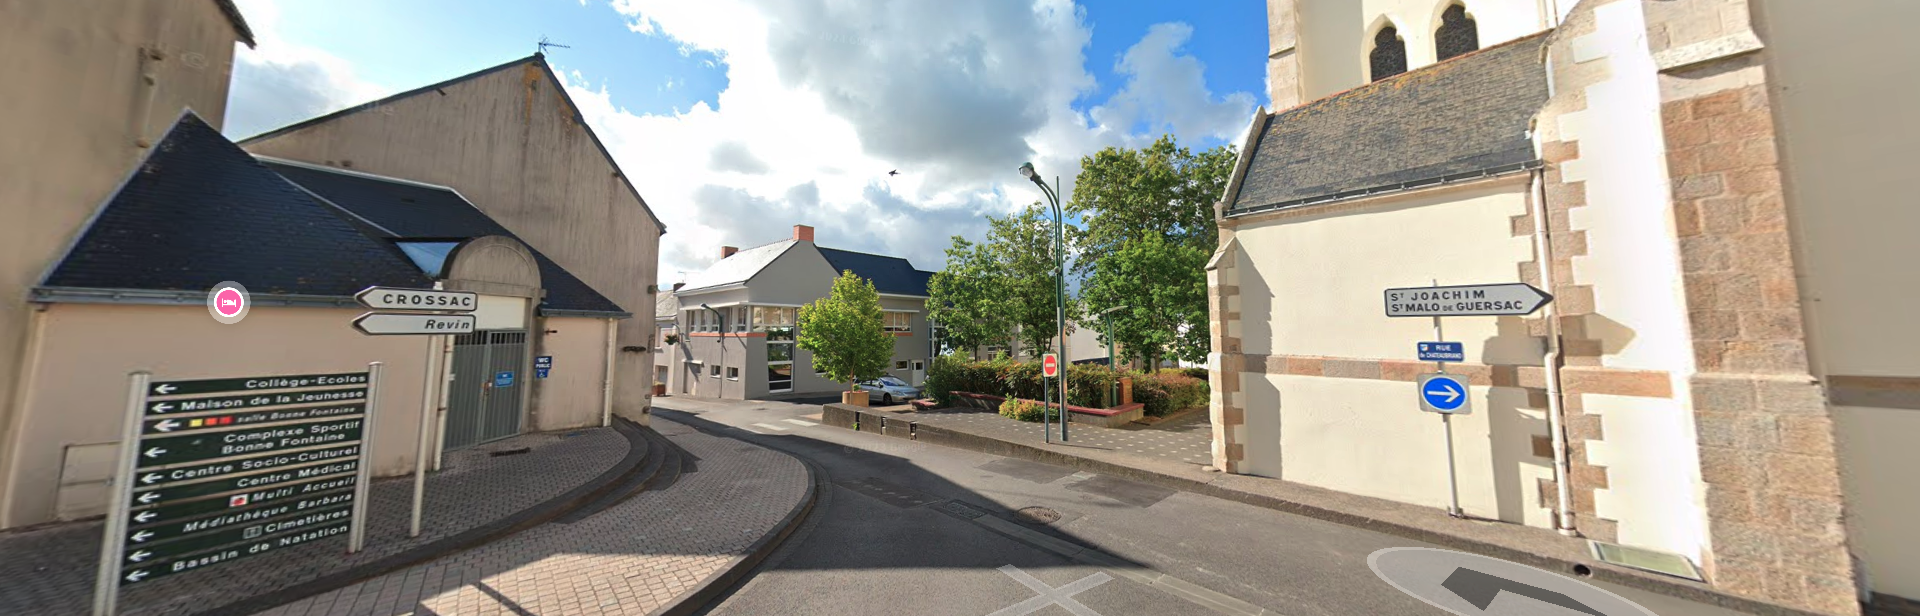 Vente Parking / Box 125m² à Saint-Malo-de-Guersac (44550) - Immobilière Riboulet